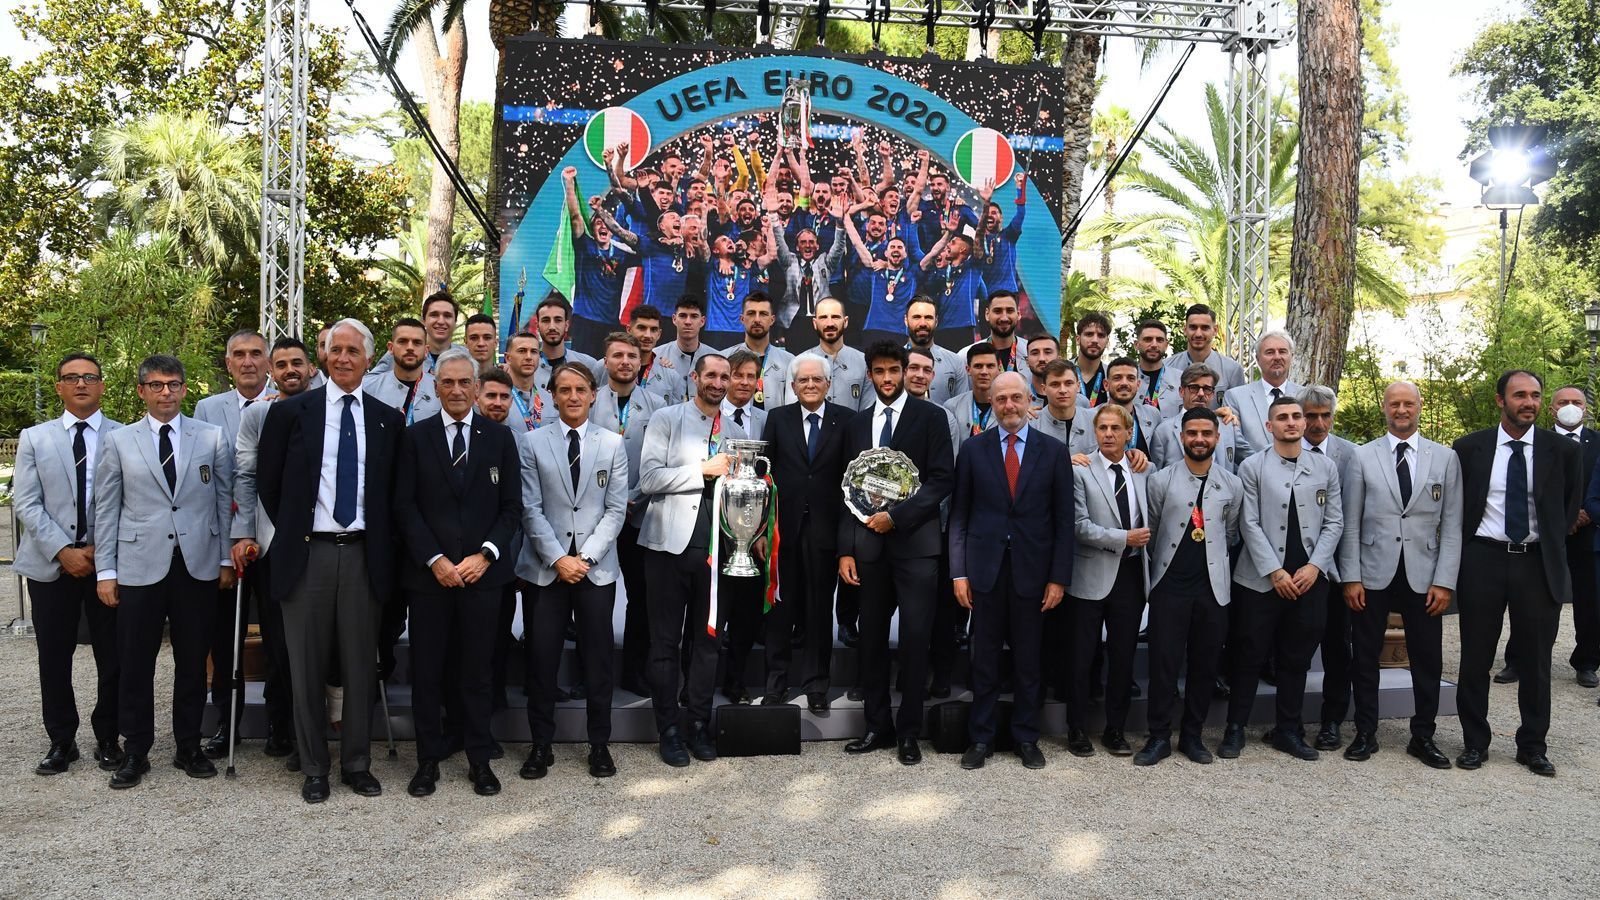 
                <strong>Der Präsident in der Mitte der Europameister</strong><br>
                Präsident Sergio Mattarella steht in der Mitte der Europameister, rechts von ihm Matteo Berrettini mit der Vize-Trophäe aus Wimbledon. Links neben dem Präsidenten posiert Chiellini mit dem EM-Pokal. Was für ein großartiger Tag für Italien!
              